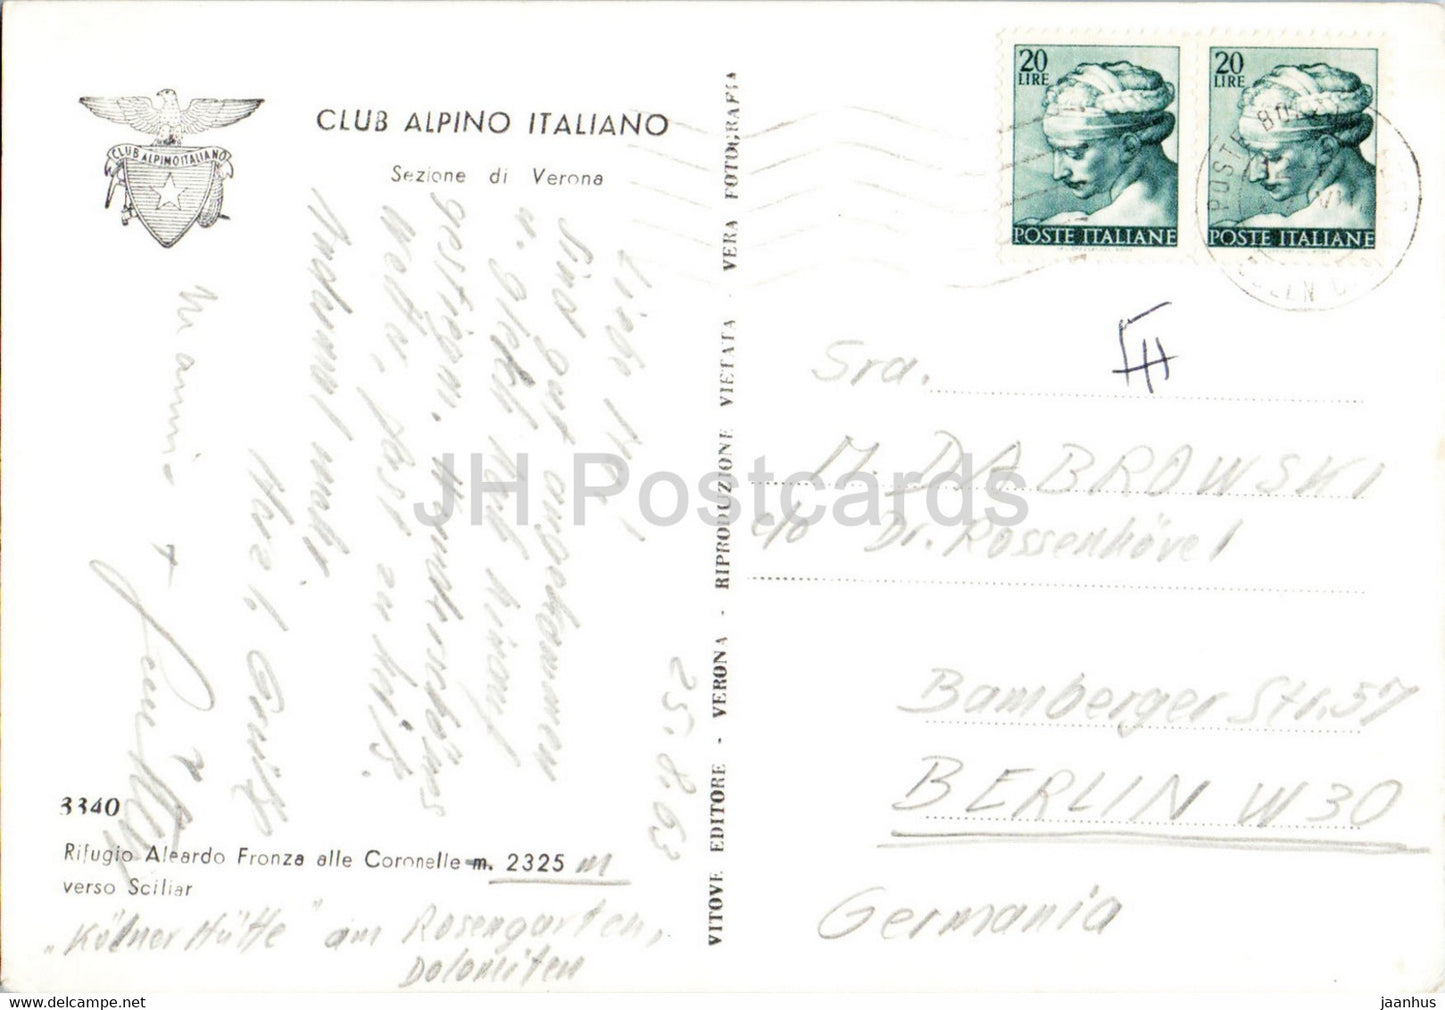 Rifugio Aleardo Fronza alle Coronelle verso Sciliar - Club Alpino Italiano - 1963 - Italie - utilisé